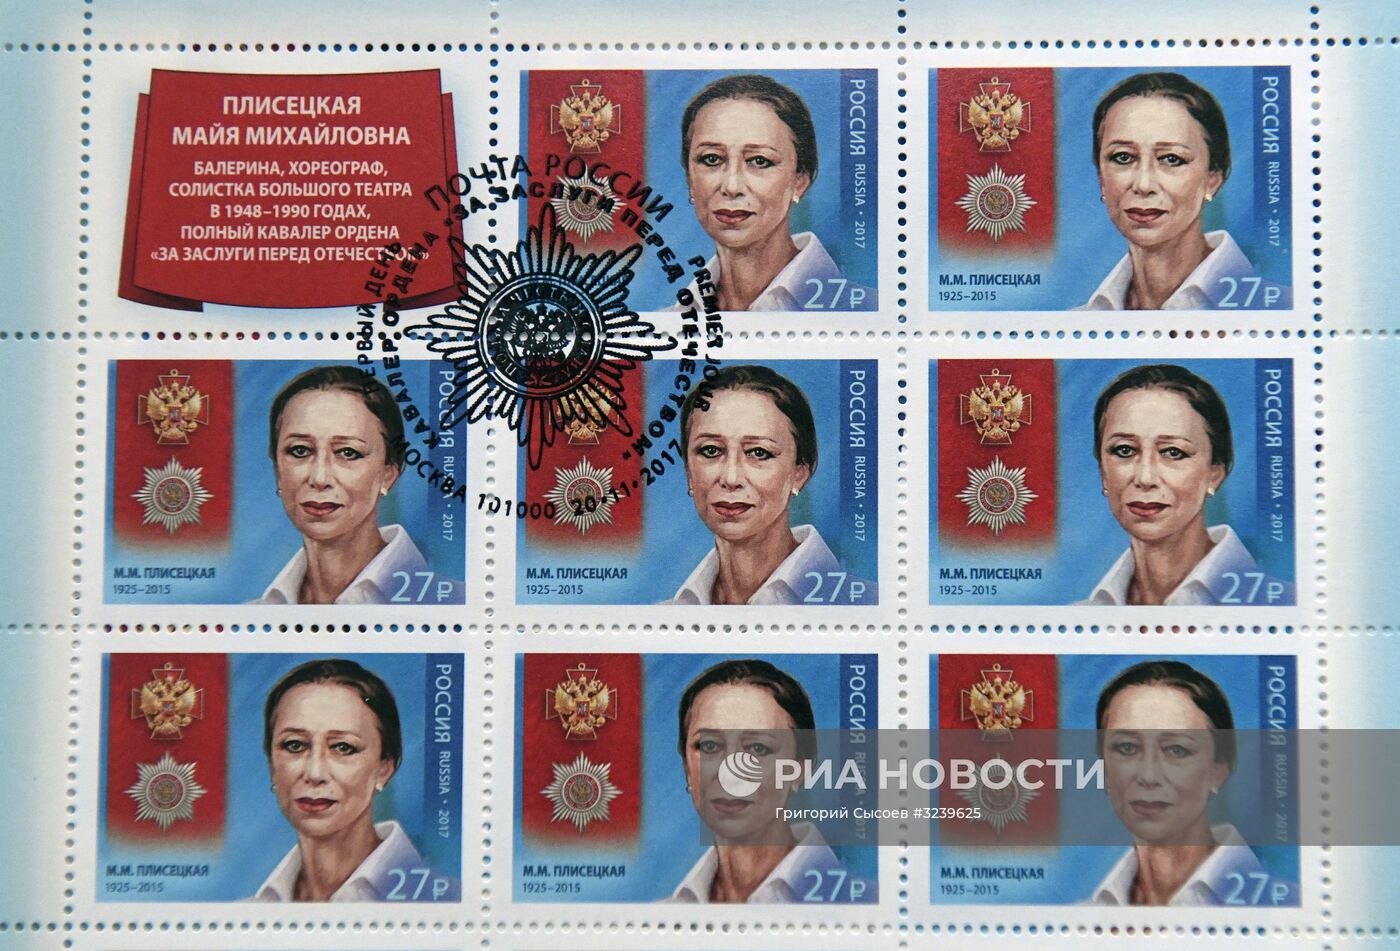 Гашение почтовой марки к юбилею балерины М. Плисецкой